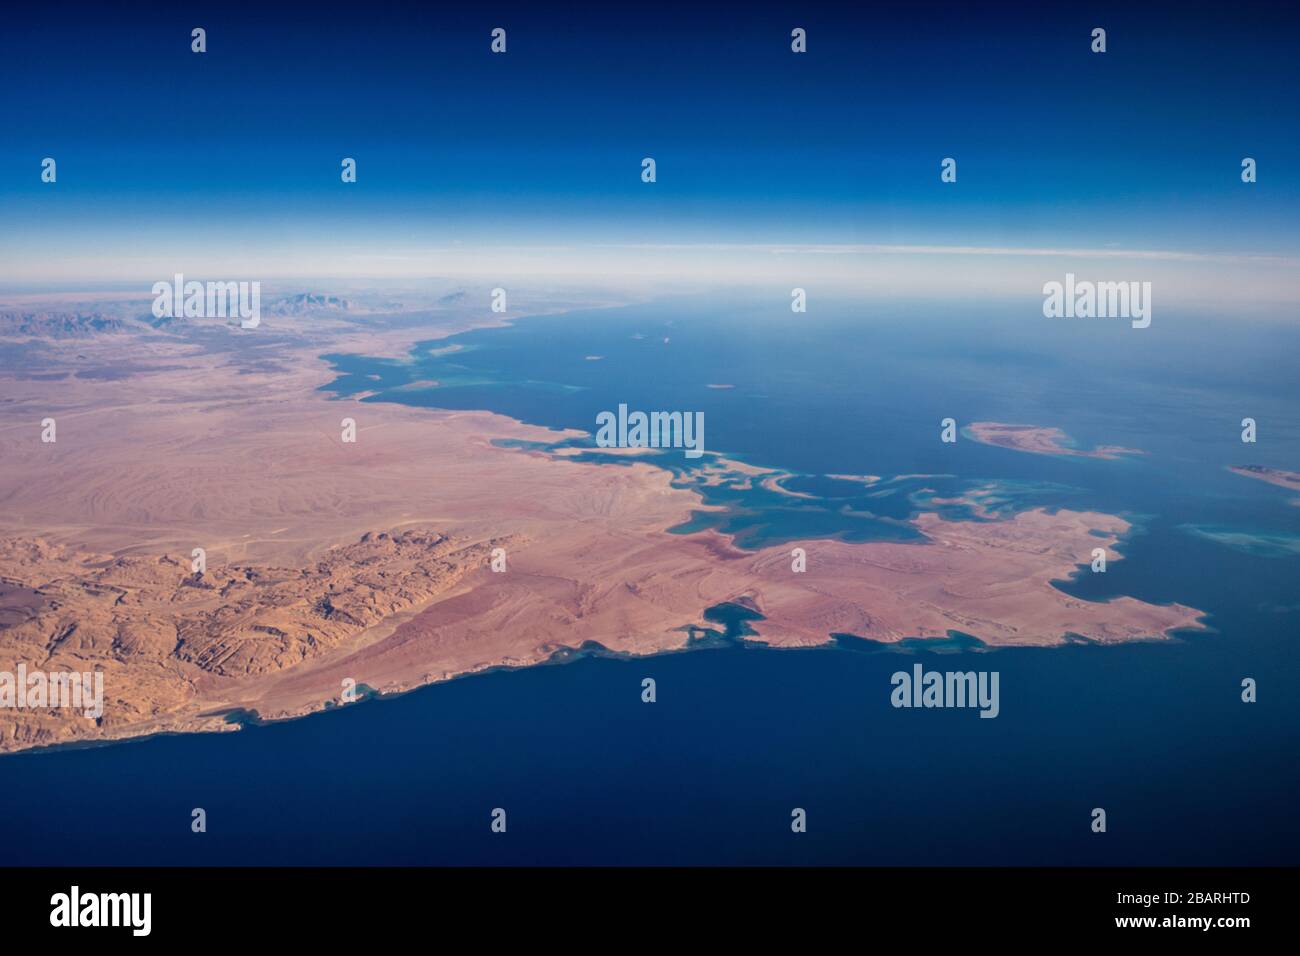 Golf von Aqaba Sinai Halbinsel auf der linken Seite, Saudi-arabischen Küste auf der rechten Seite Stockfoto